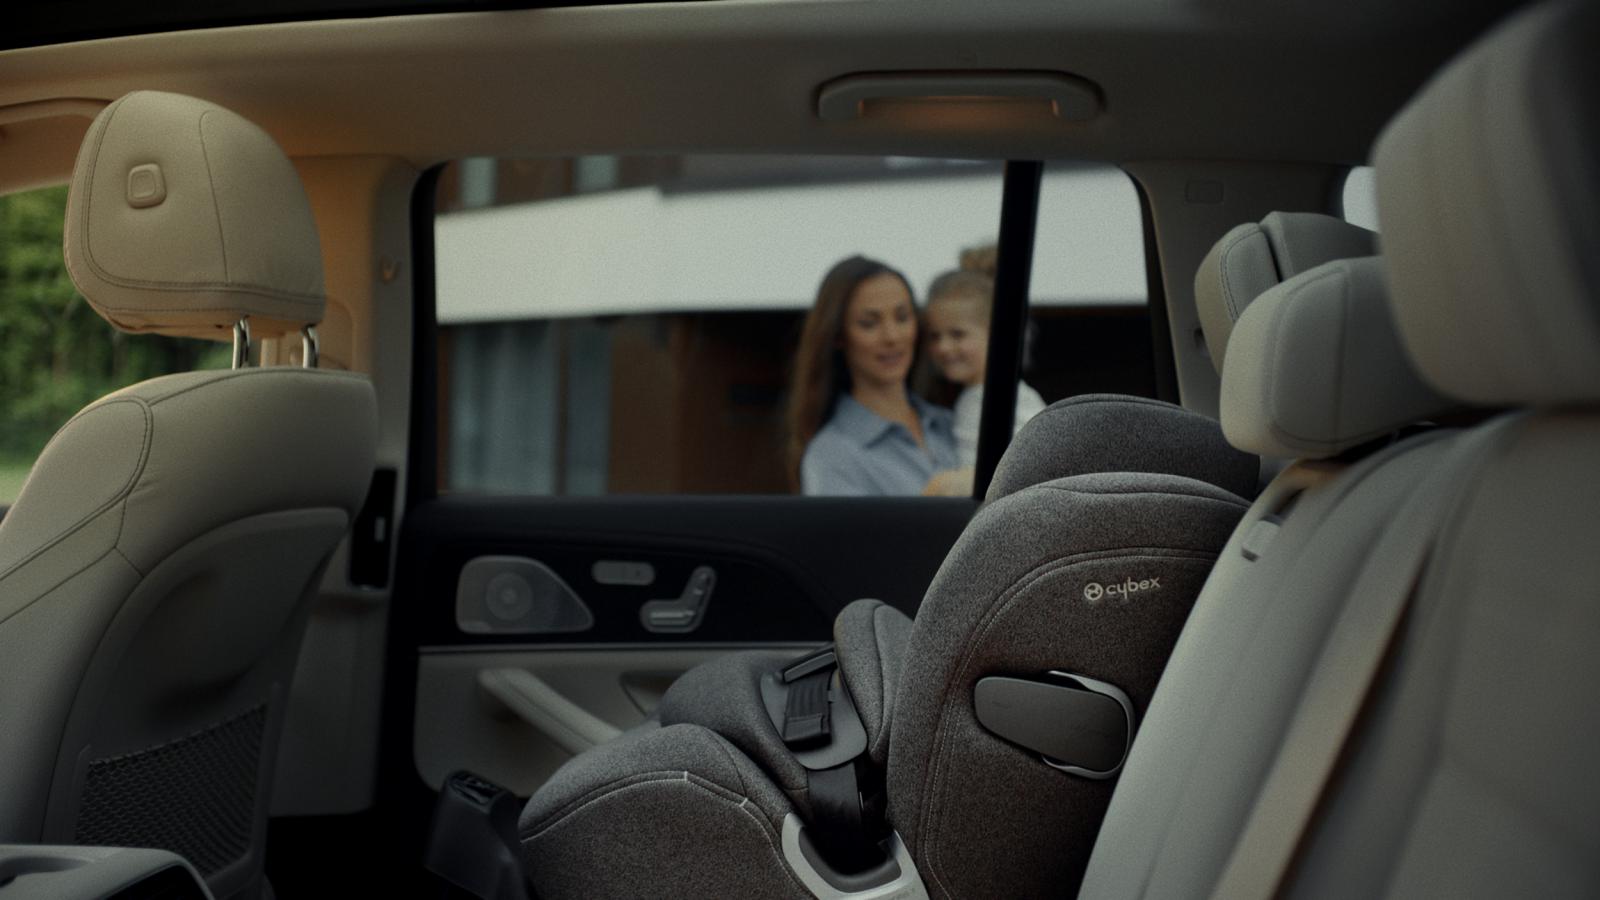 Η CYBEX παρουσιάζει το Anoris T i-Size, το πρώτο κάθισμα αυτοκινήτου με ενσωματωμένο αερόσακο που καλύπτει όλο το σώμα του παιδιού